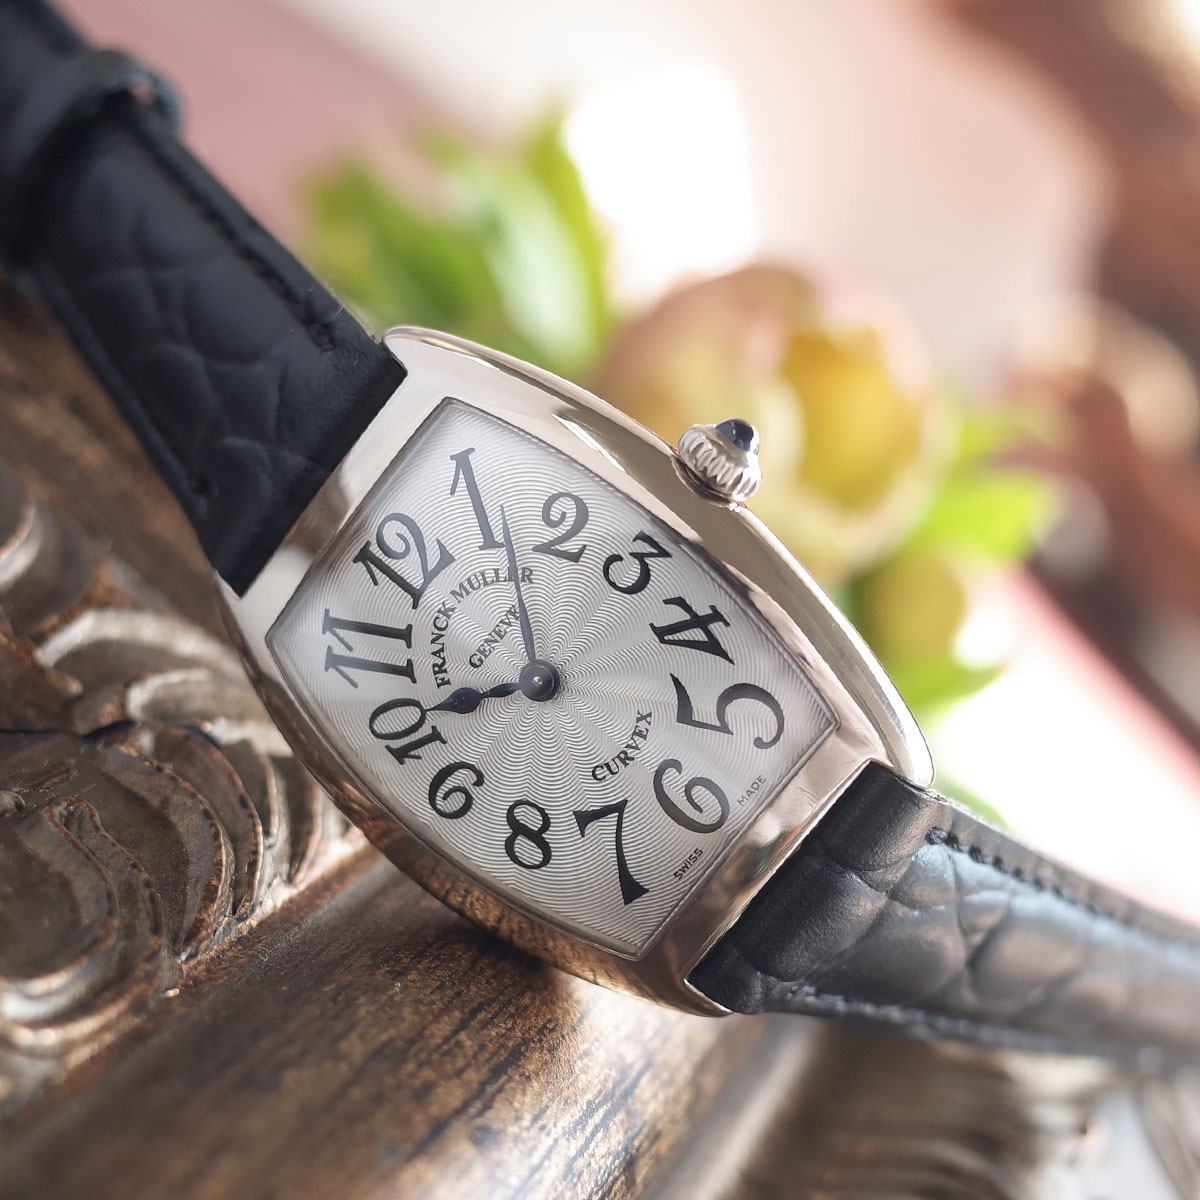 【中古】フランクミュラー トノーカーベックス 1752 K18WG 750 国内正規 箱 保証書 新品革ベルト レディース 腕時計 FRANCK MULLER